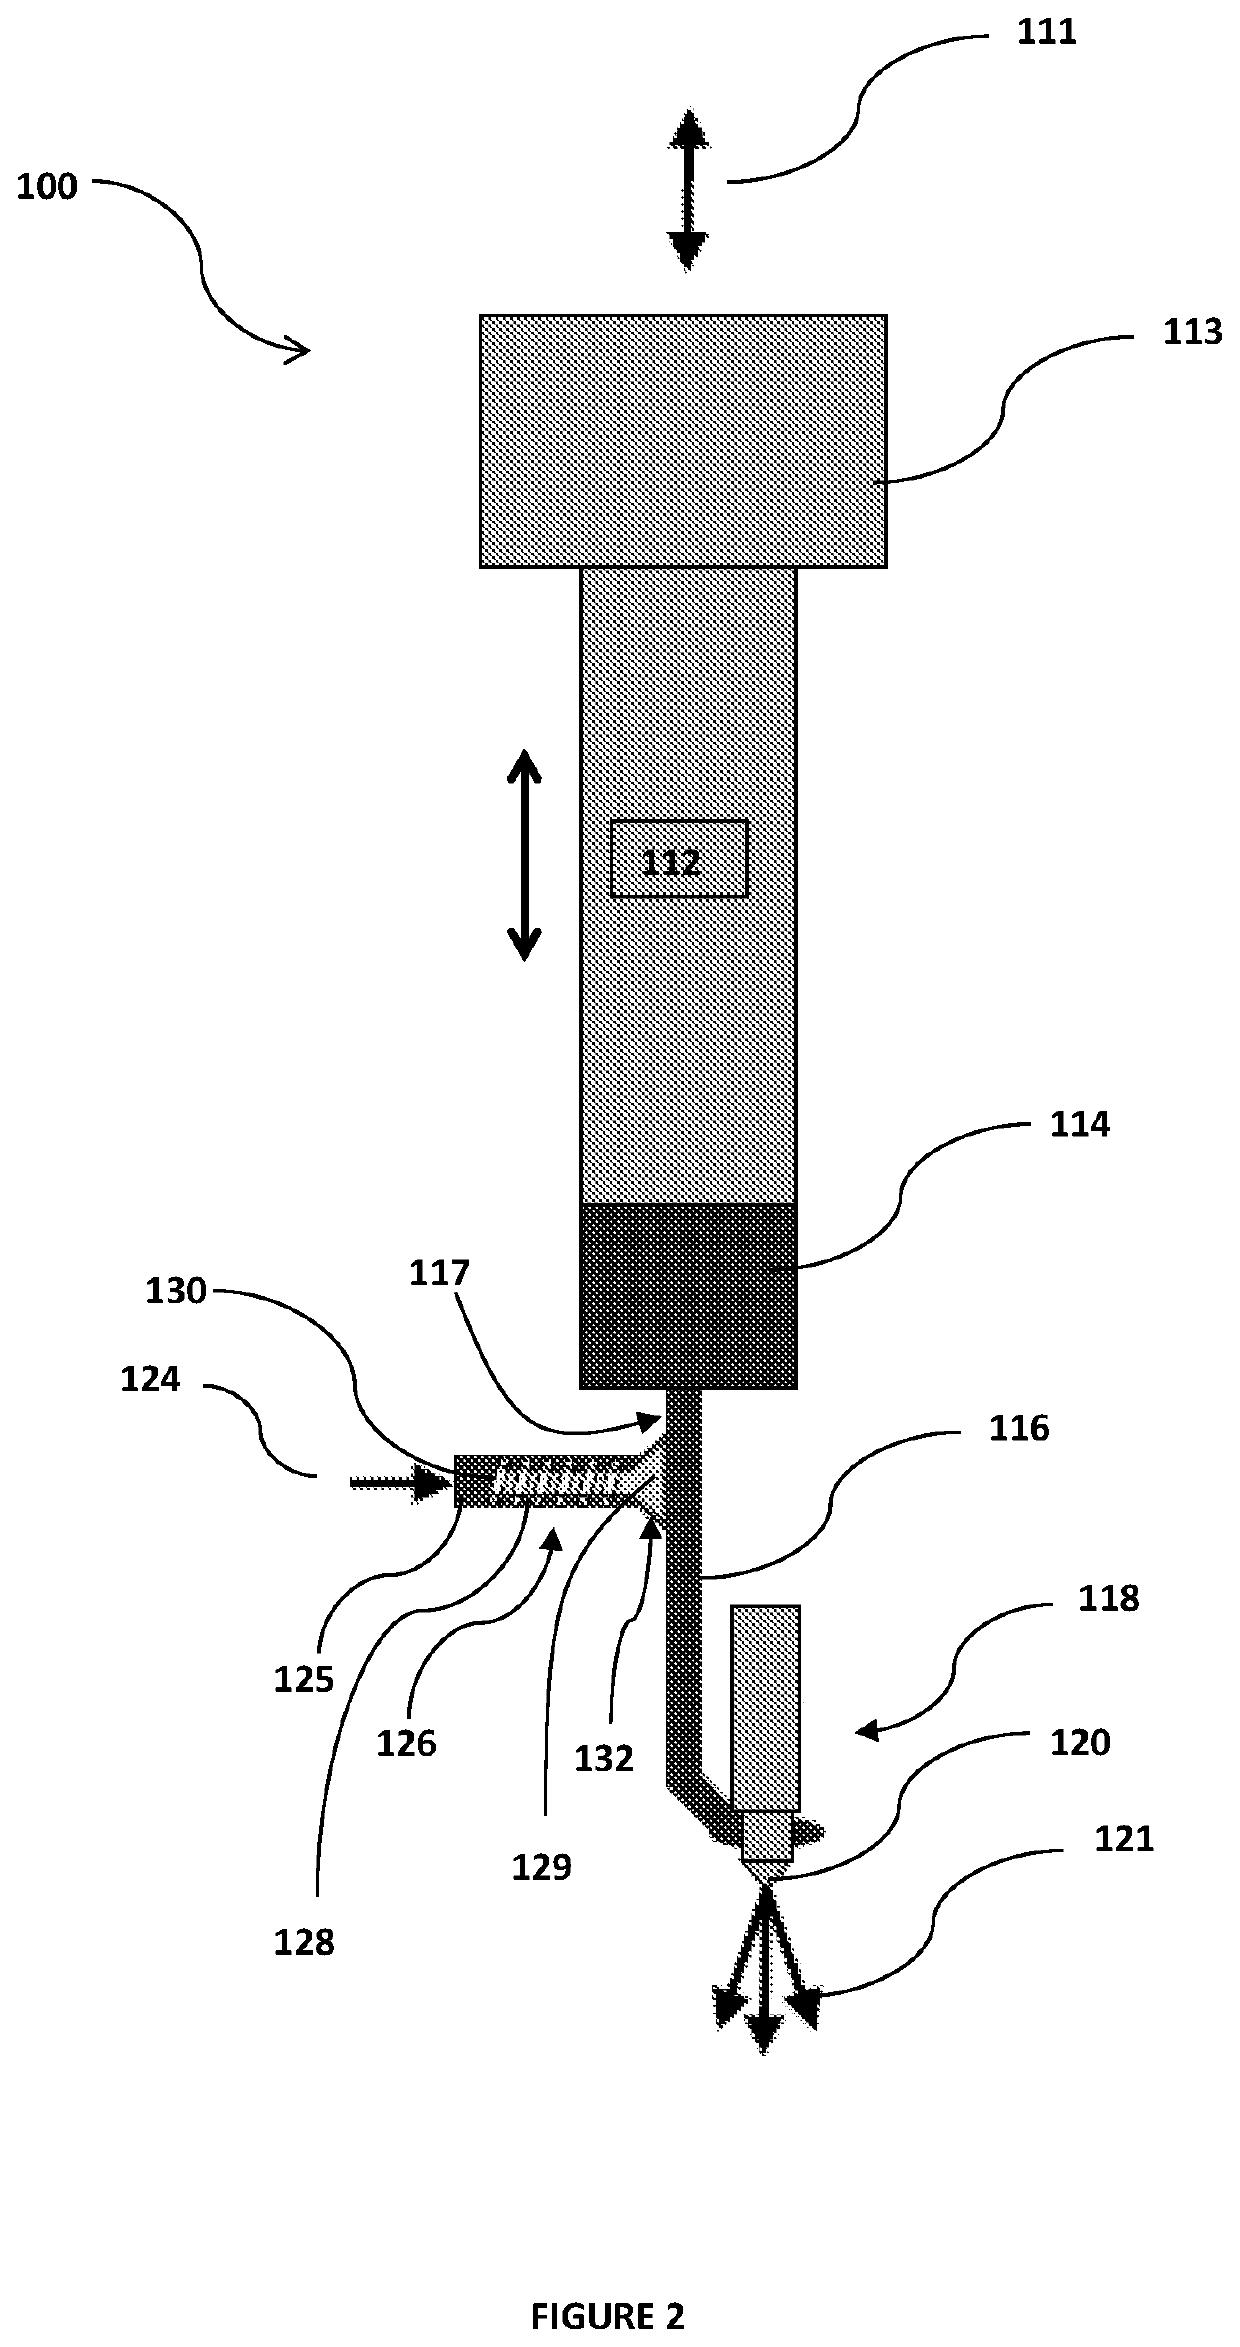 Injector arrangement for diesel engines using slurry or emulsion fuels